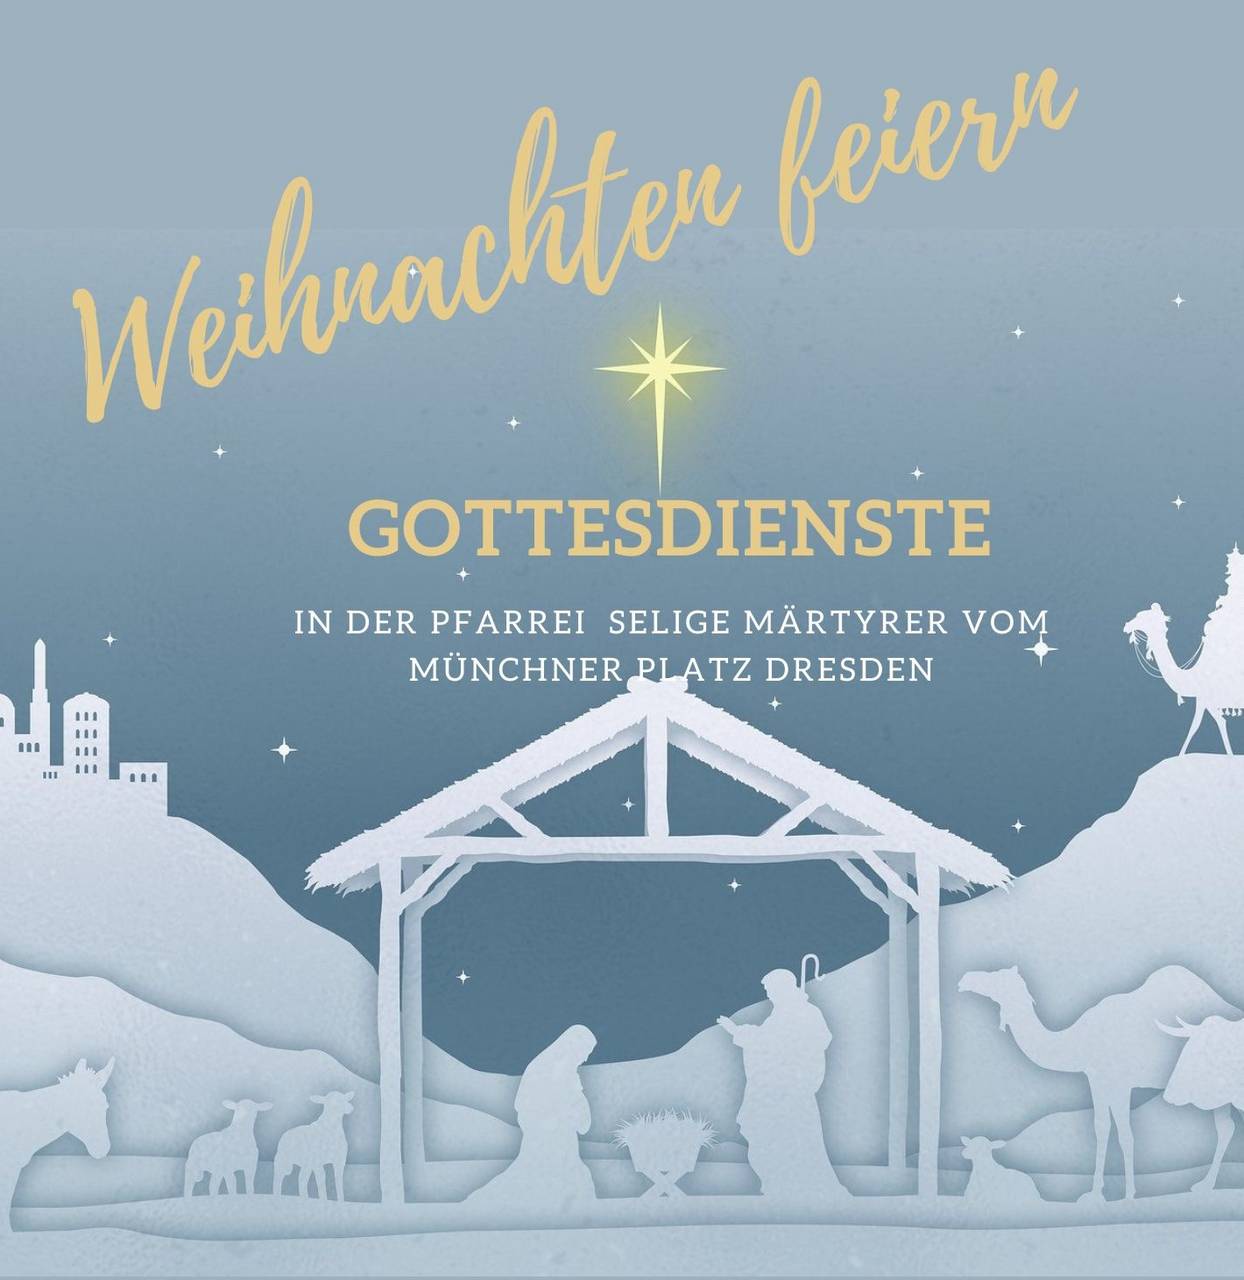 m_white and gold bethlehem church invitation-1 | Kath. Pfarrei Selige Märtyrer vom Münchner Platz - Aktuelles St. Paulus - Weihnachten in der Pfarrei